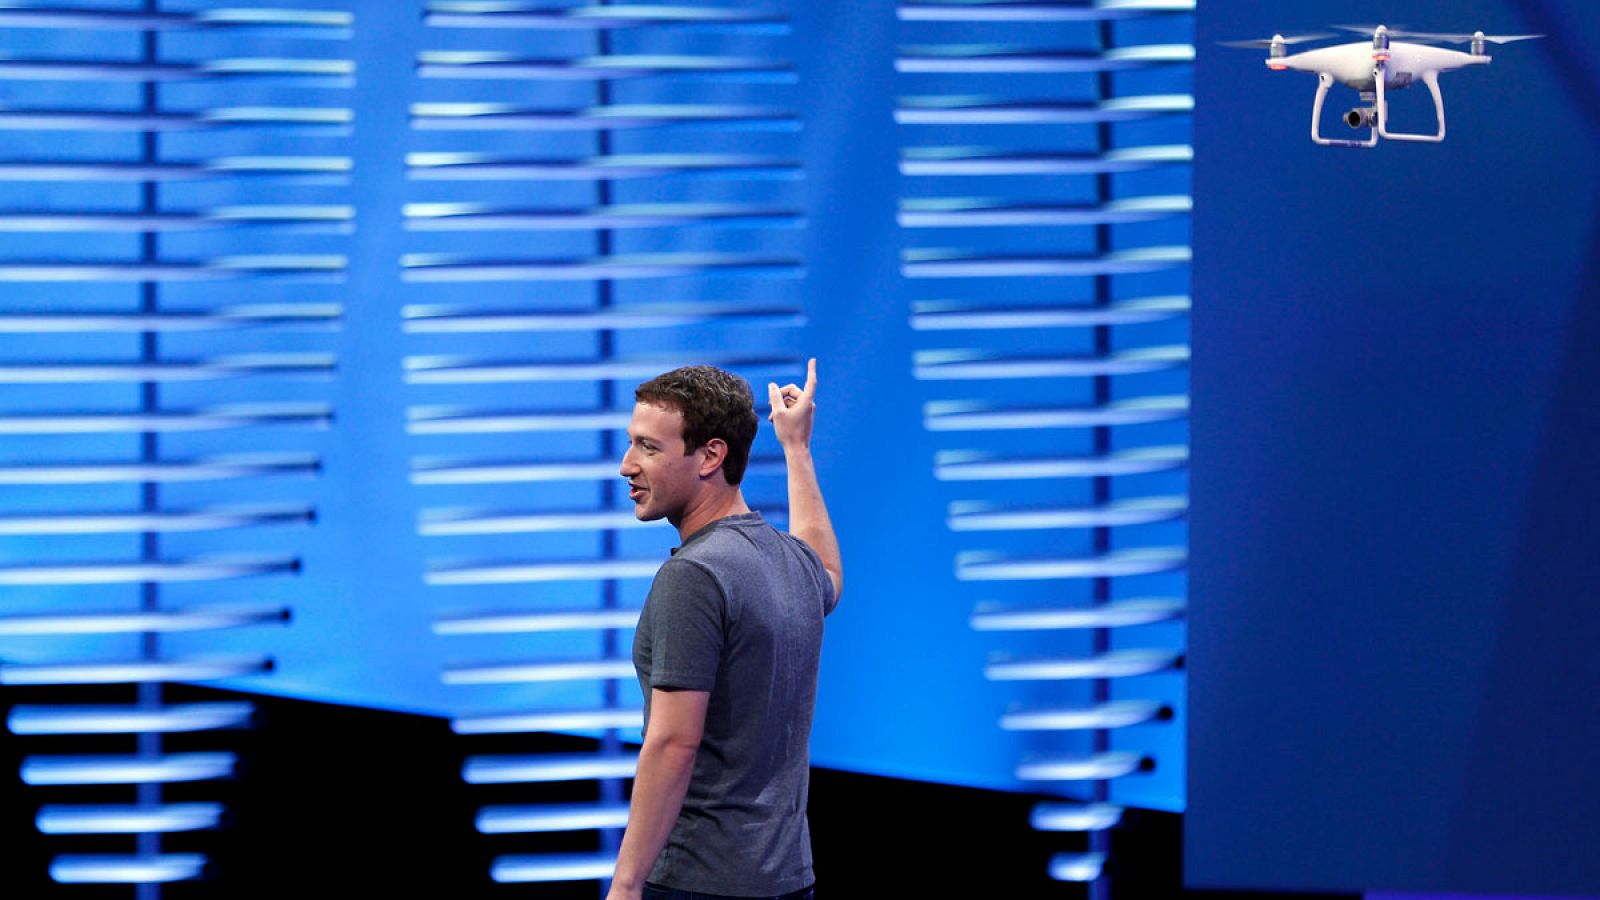 El CEO de Facebook, Mark Zuckerberg, señala a un dron durante su discurso en San Francisco.